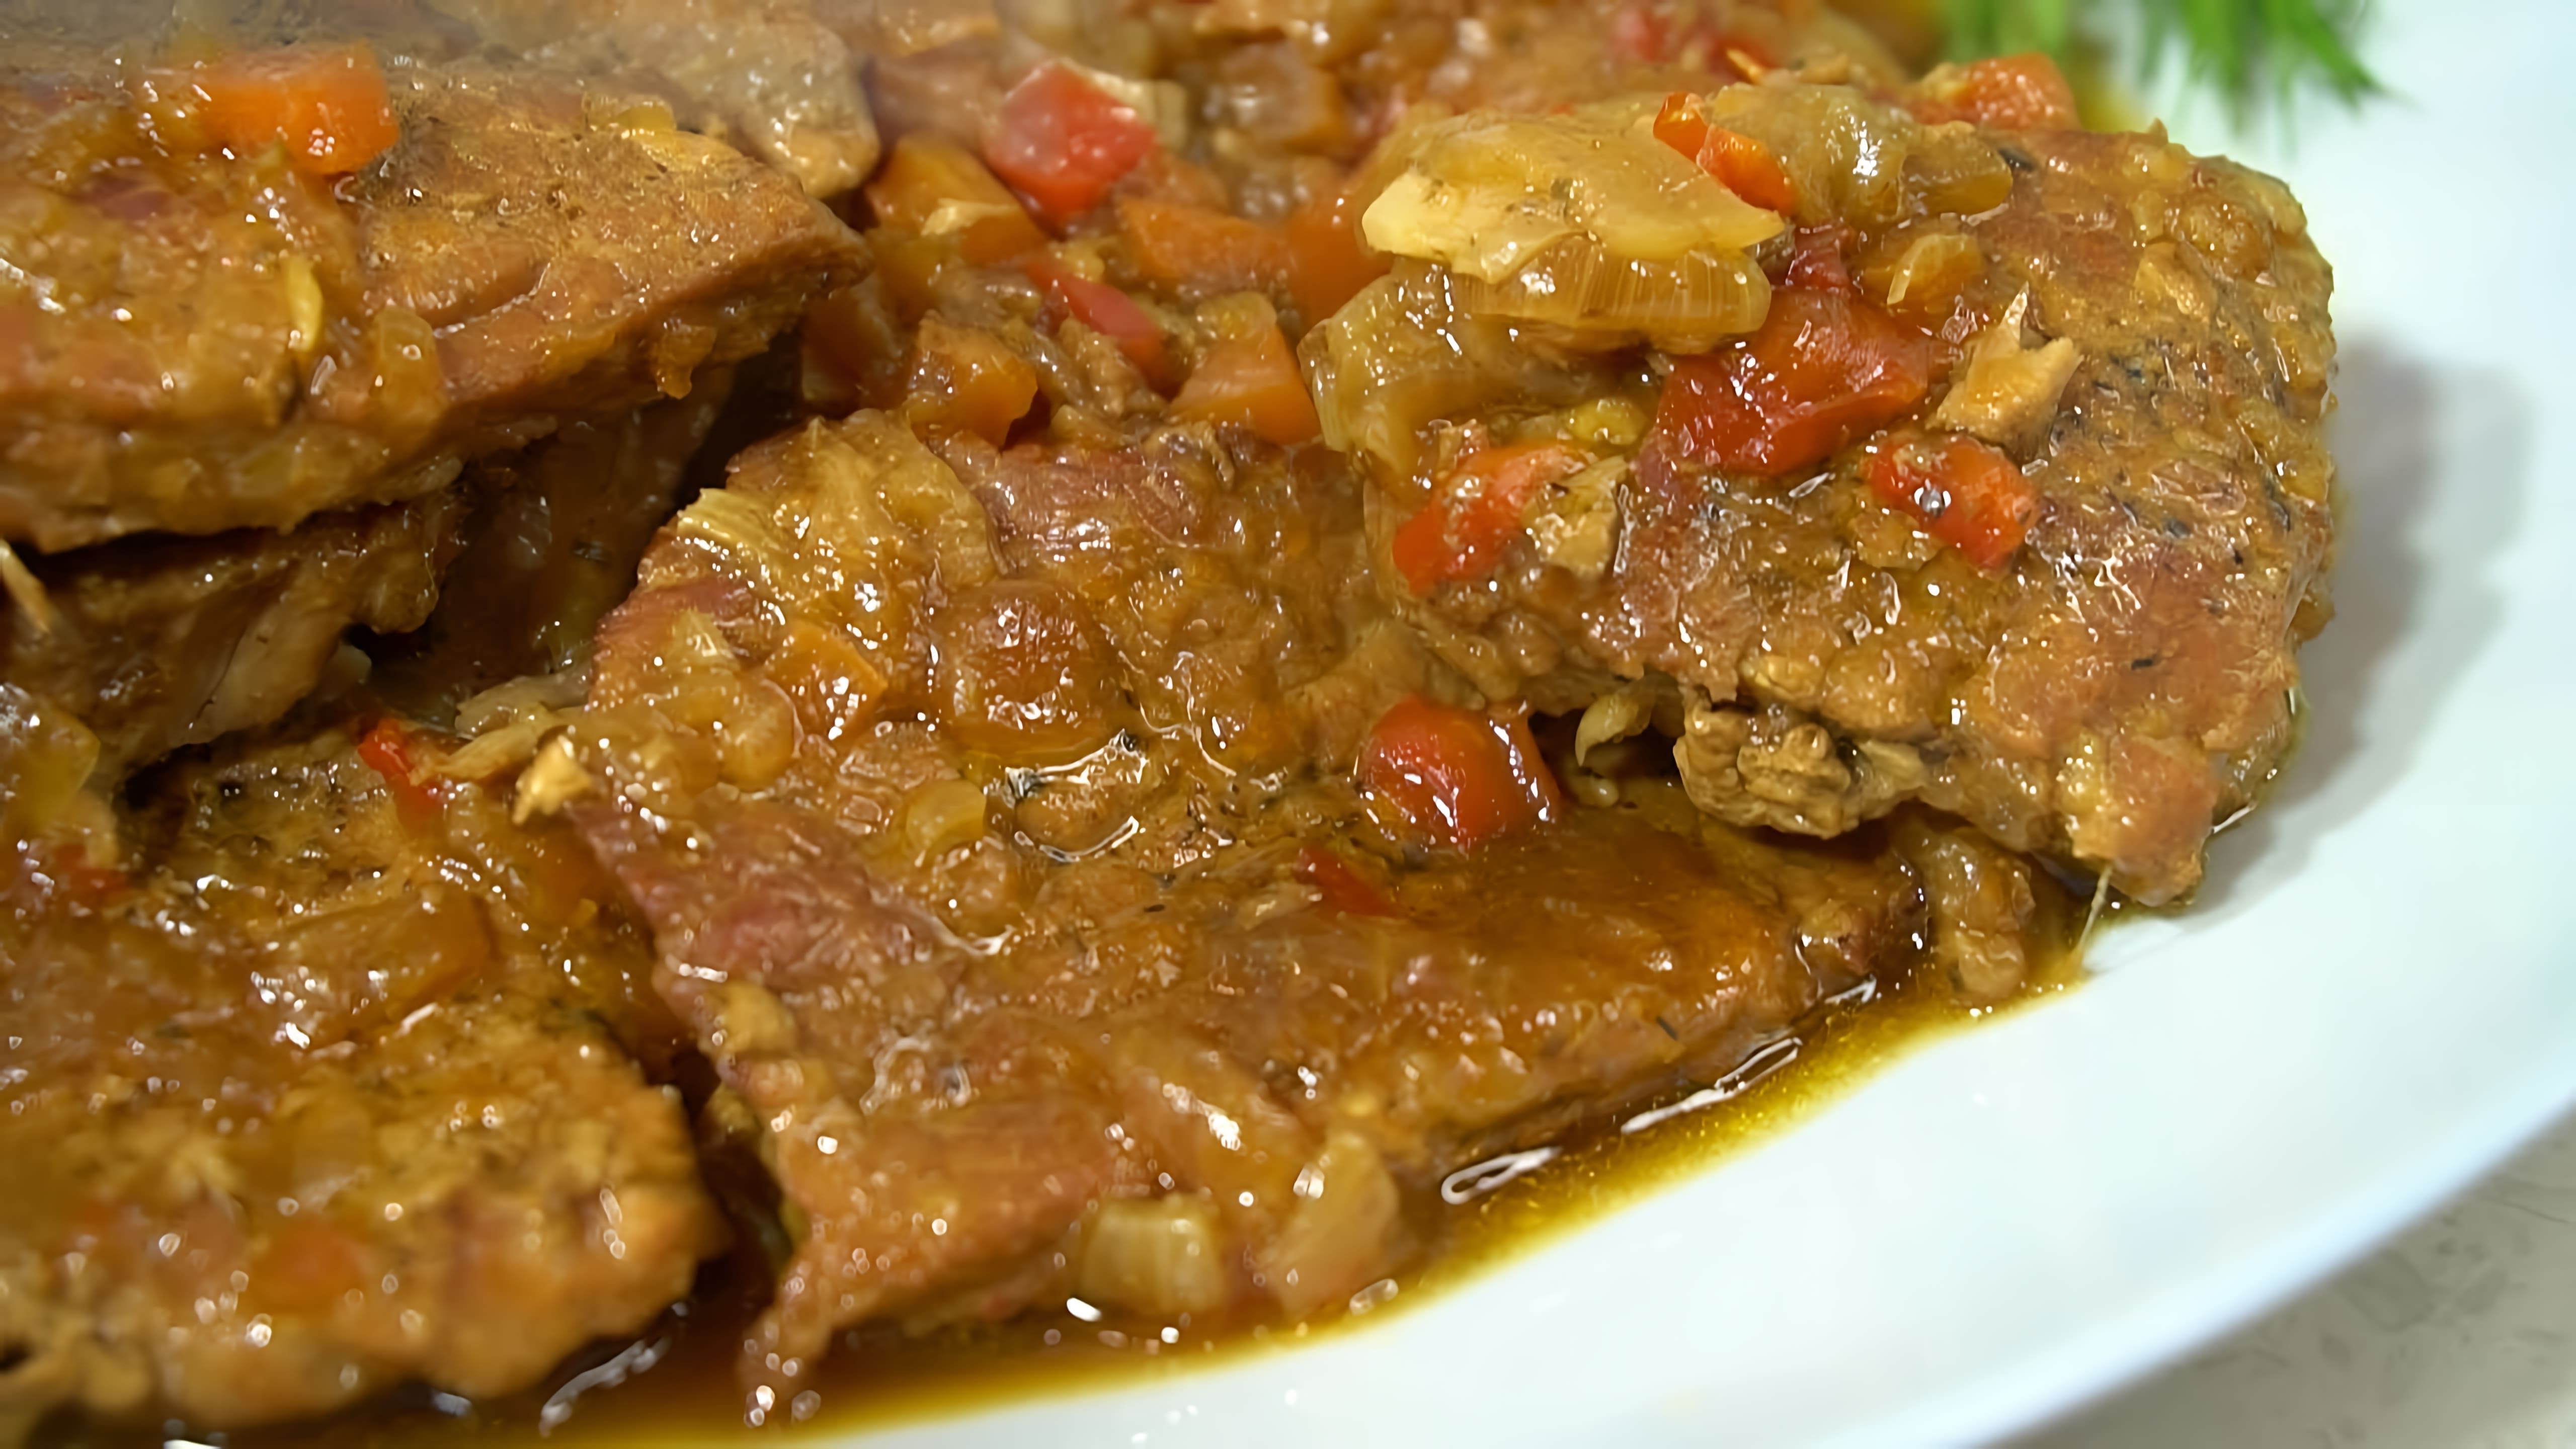 Видео рецепт "мяса по-кавказски", который включает в себя приготовление мяса с овощным рагу